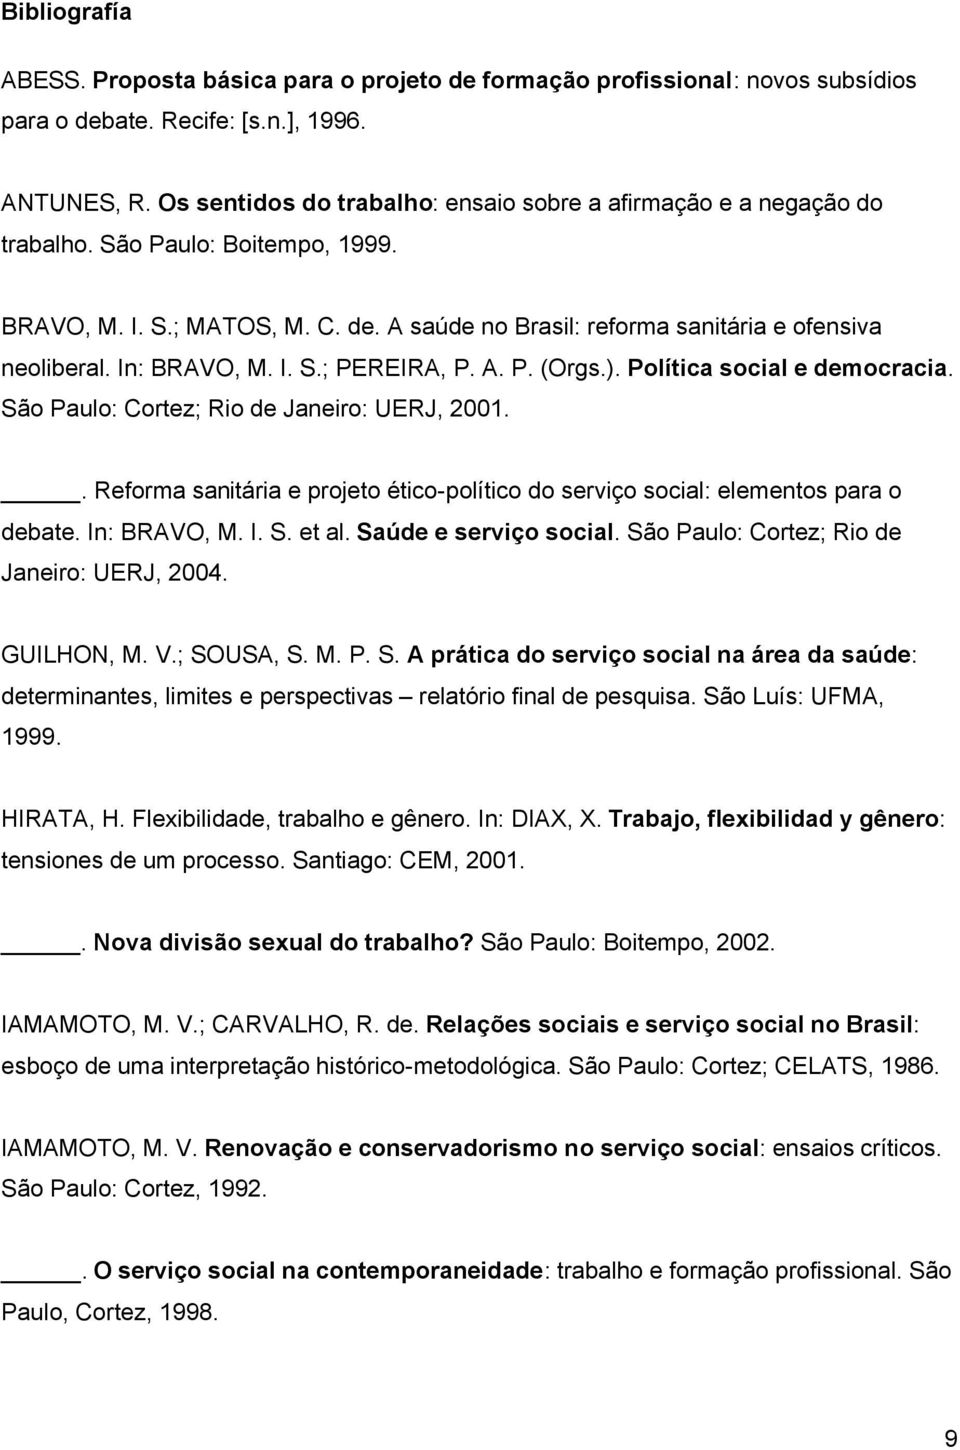 In: BRAVO, M. I. S.; PEREIRA, P. A. P. (Orgs.). Política social e democracia. São Paulo: Cortez; Rio de Janeiro: UERJ, 2001.